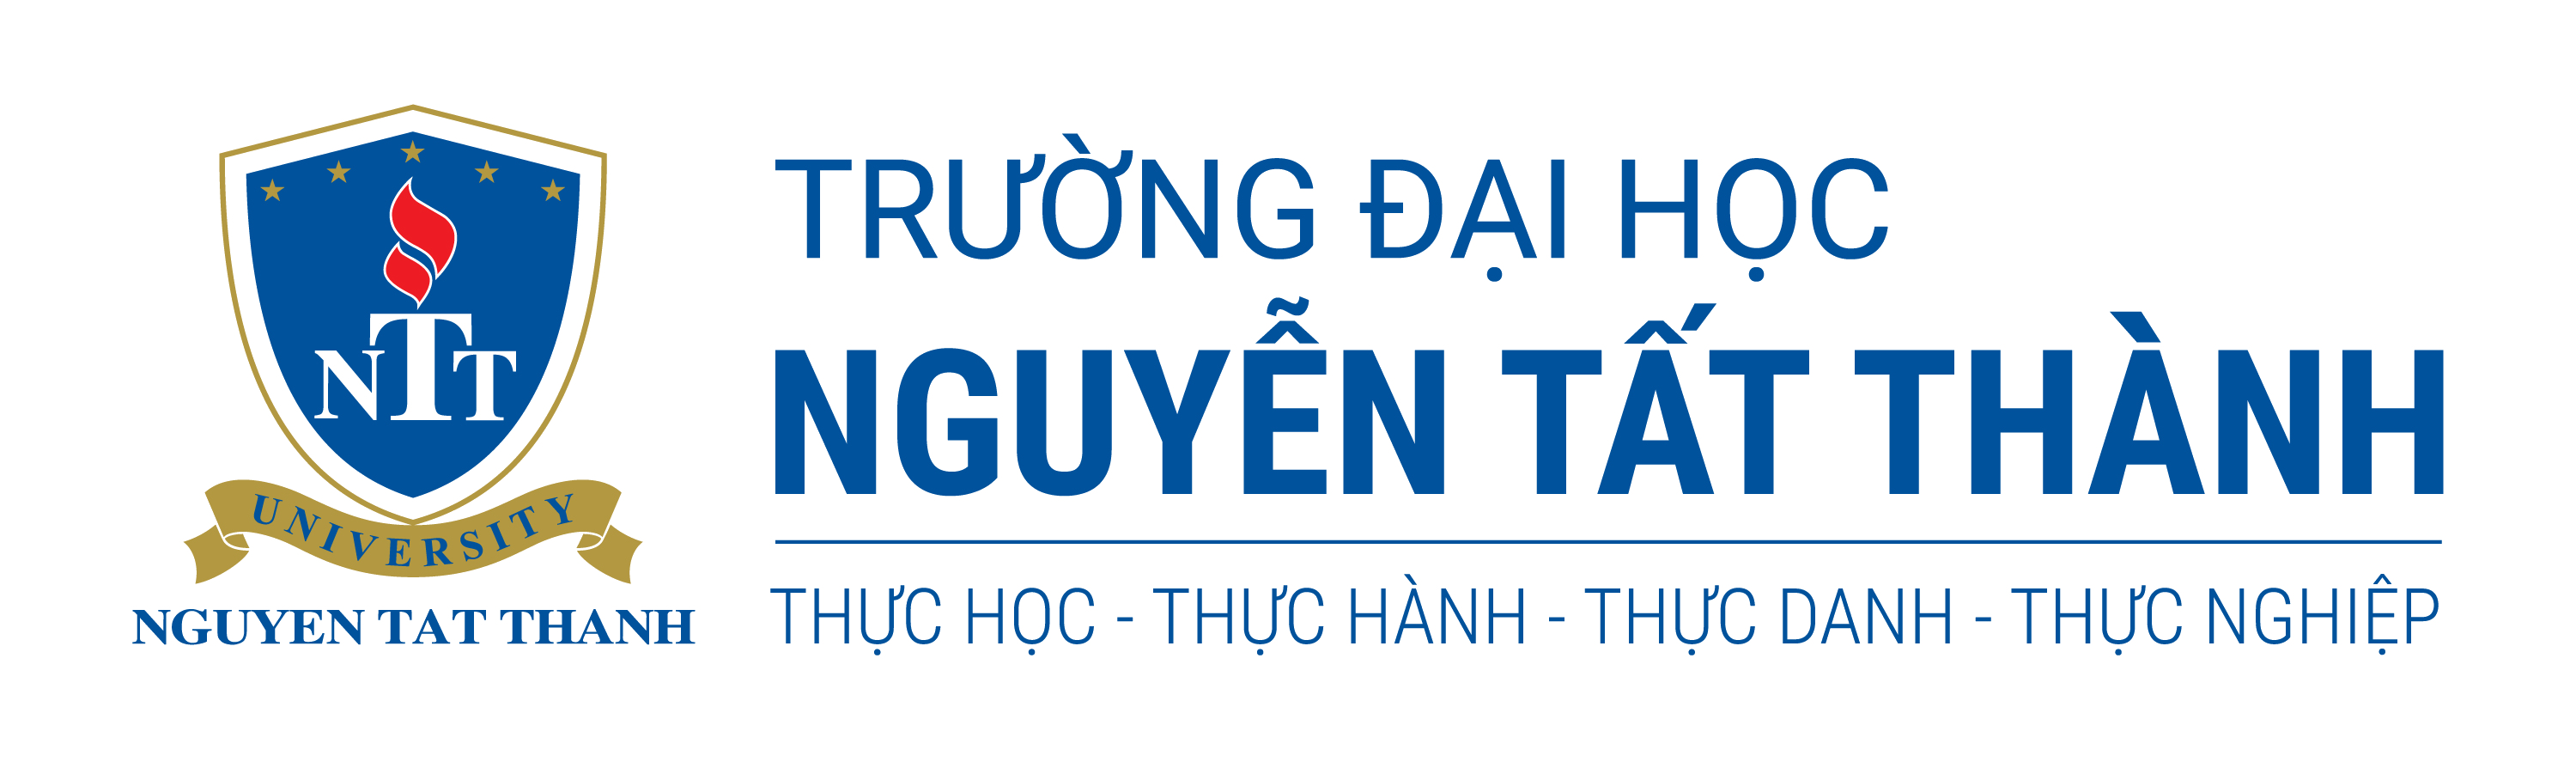 Contact - VIỆN KỸ THUẬT GIAO THÔNG